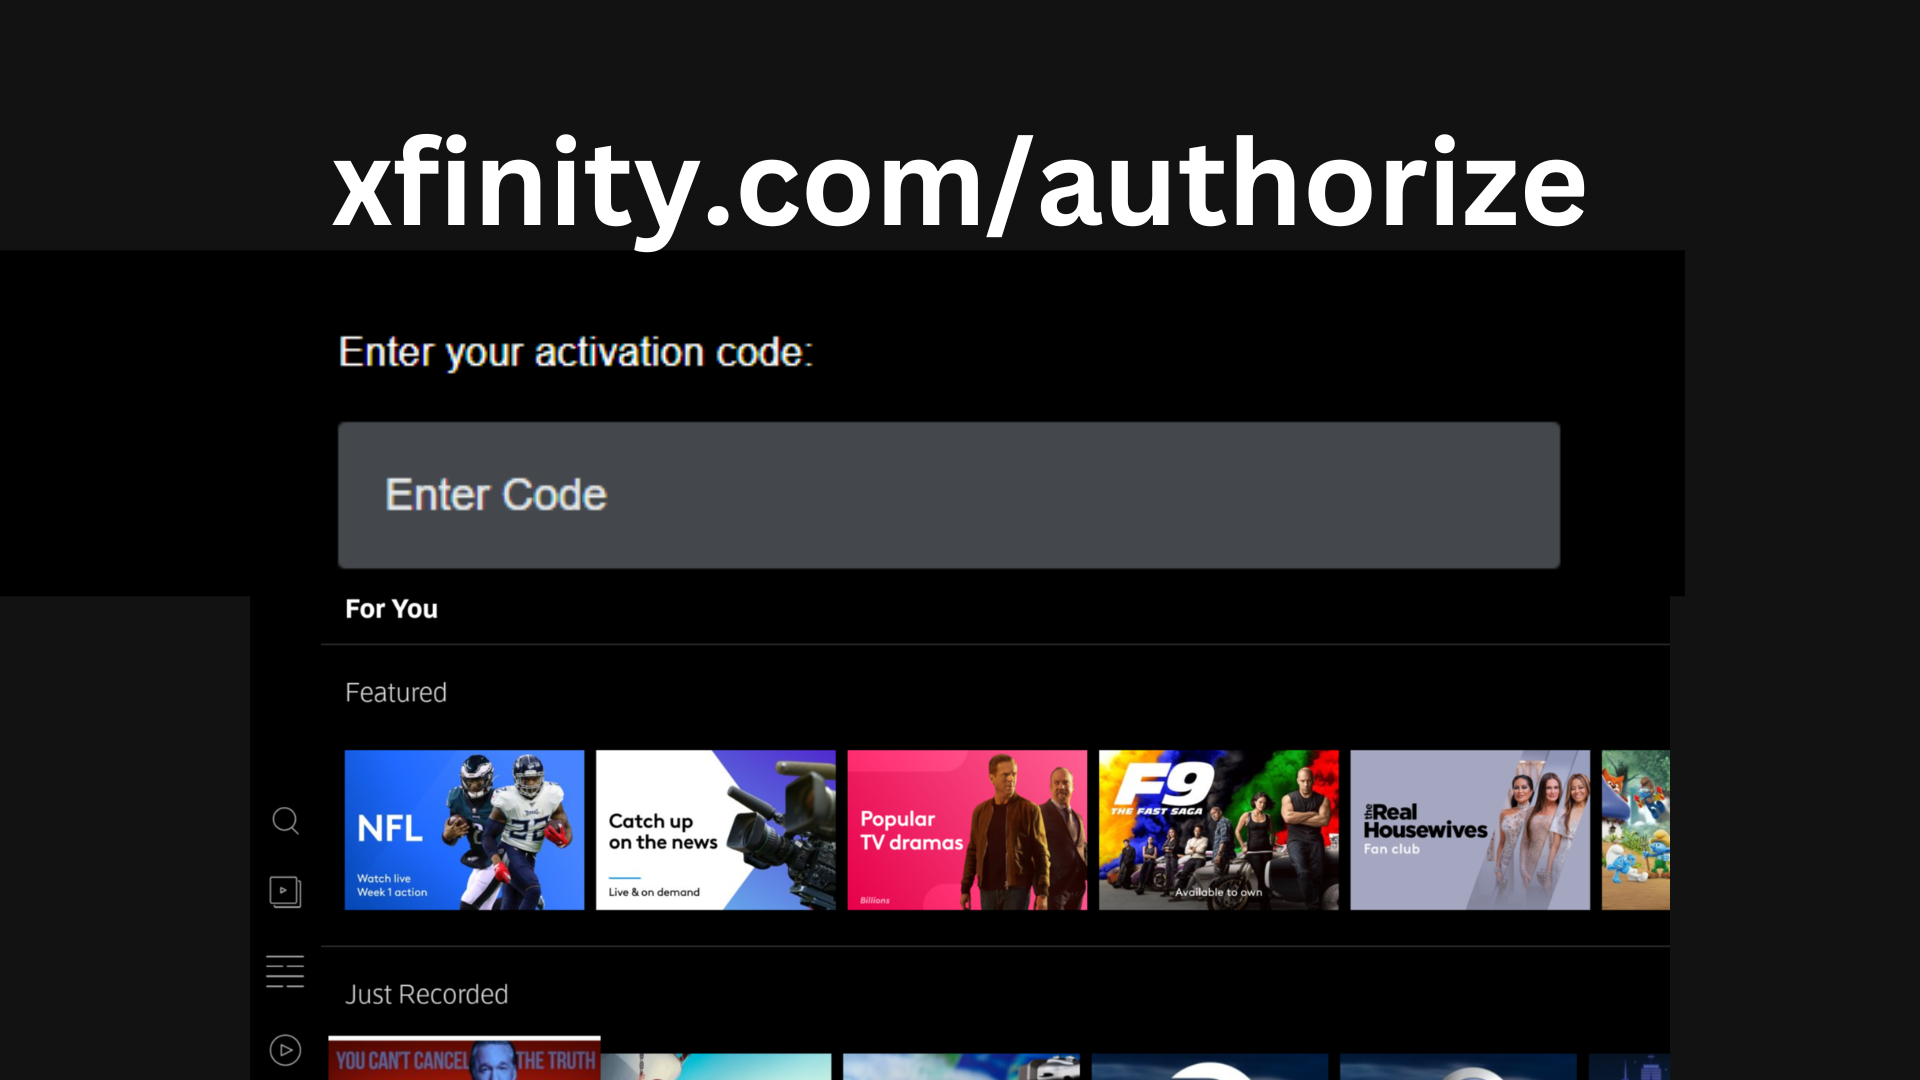 xfinity.com authorize